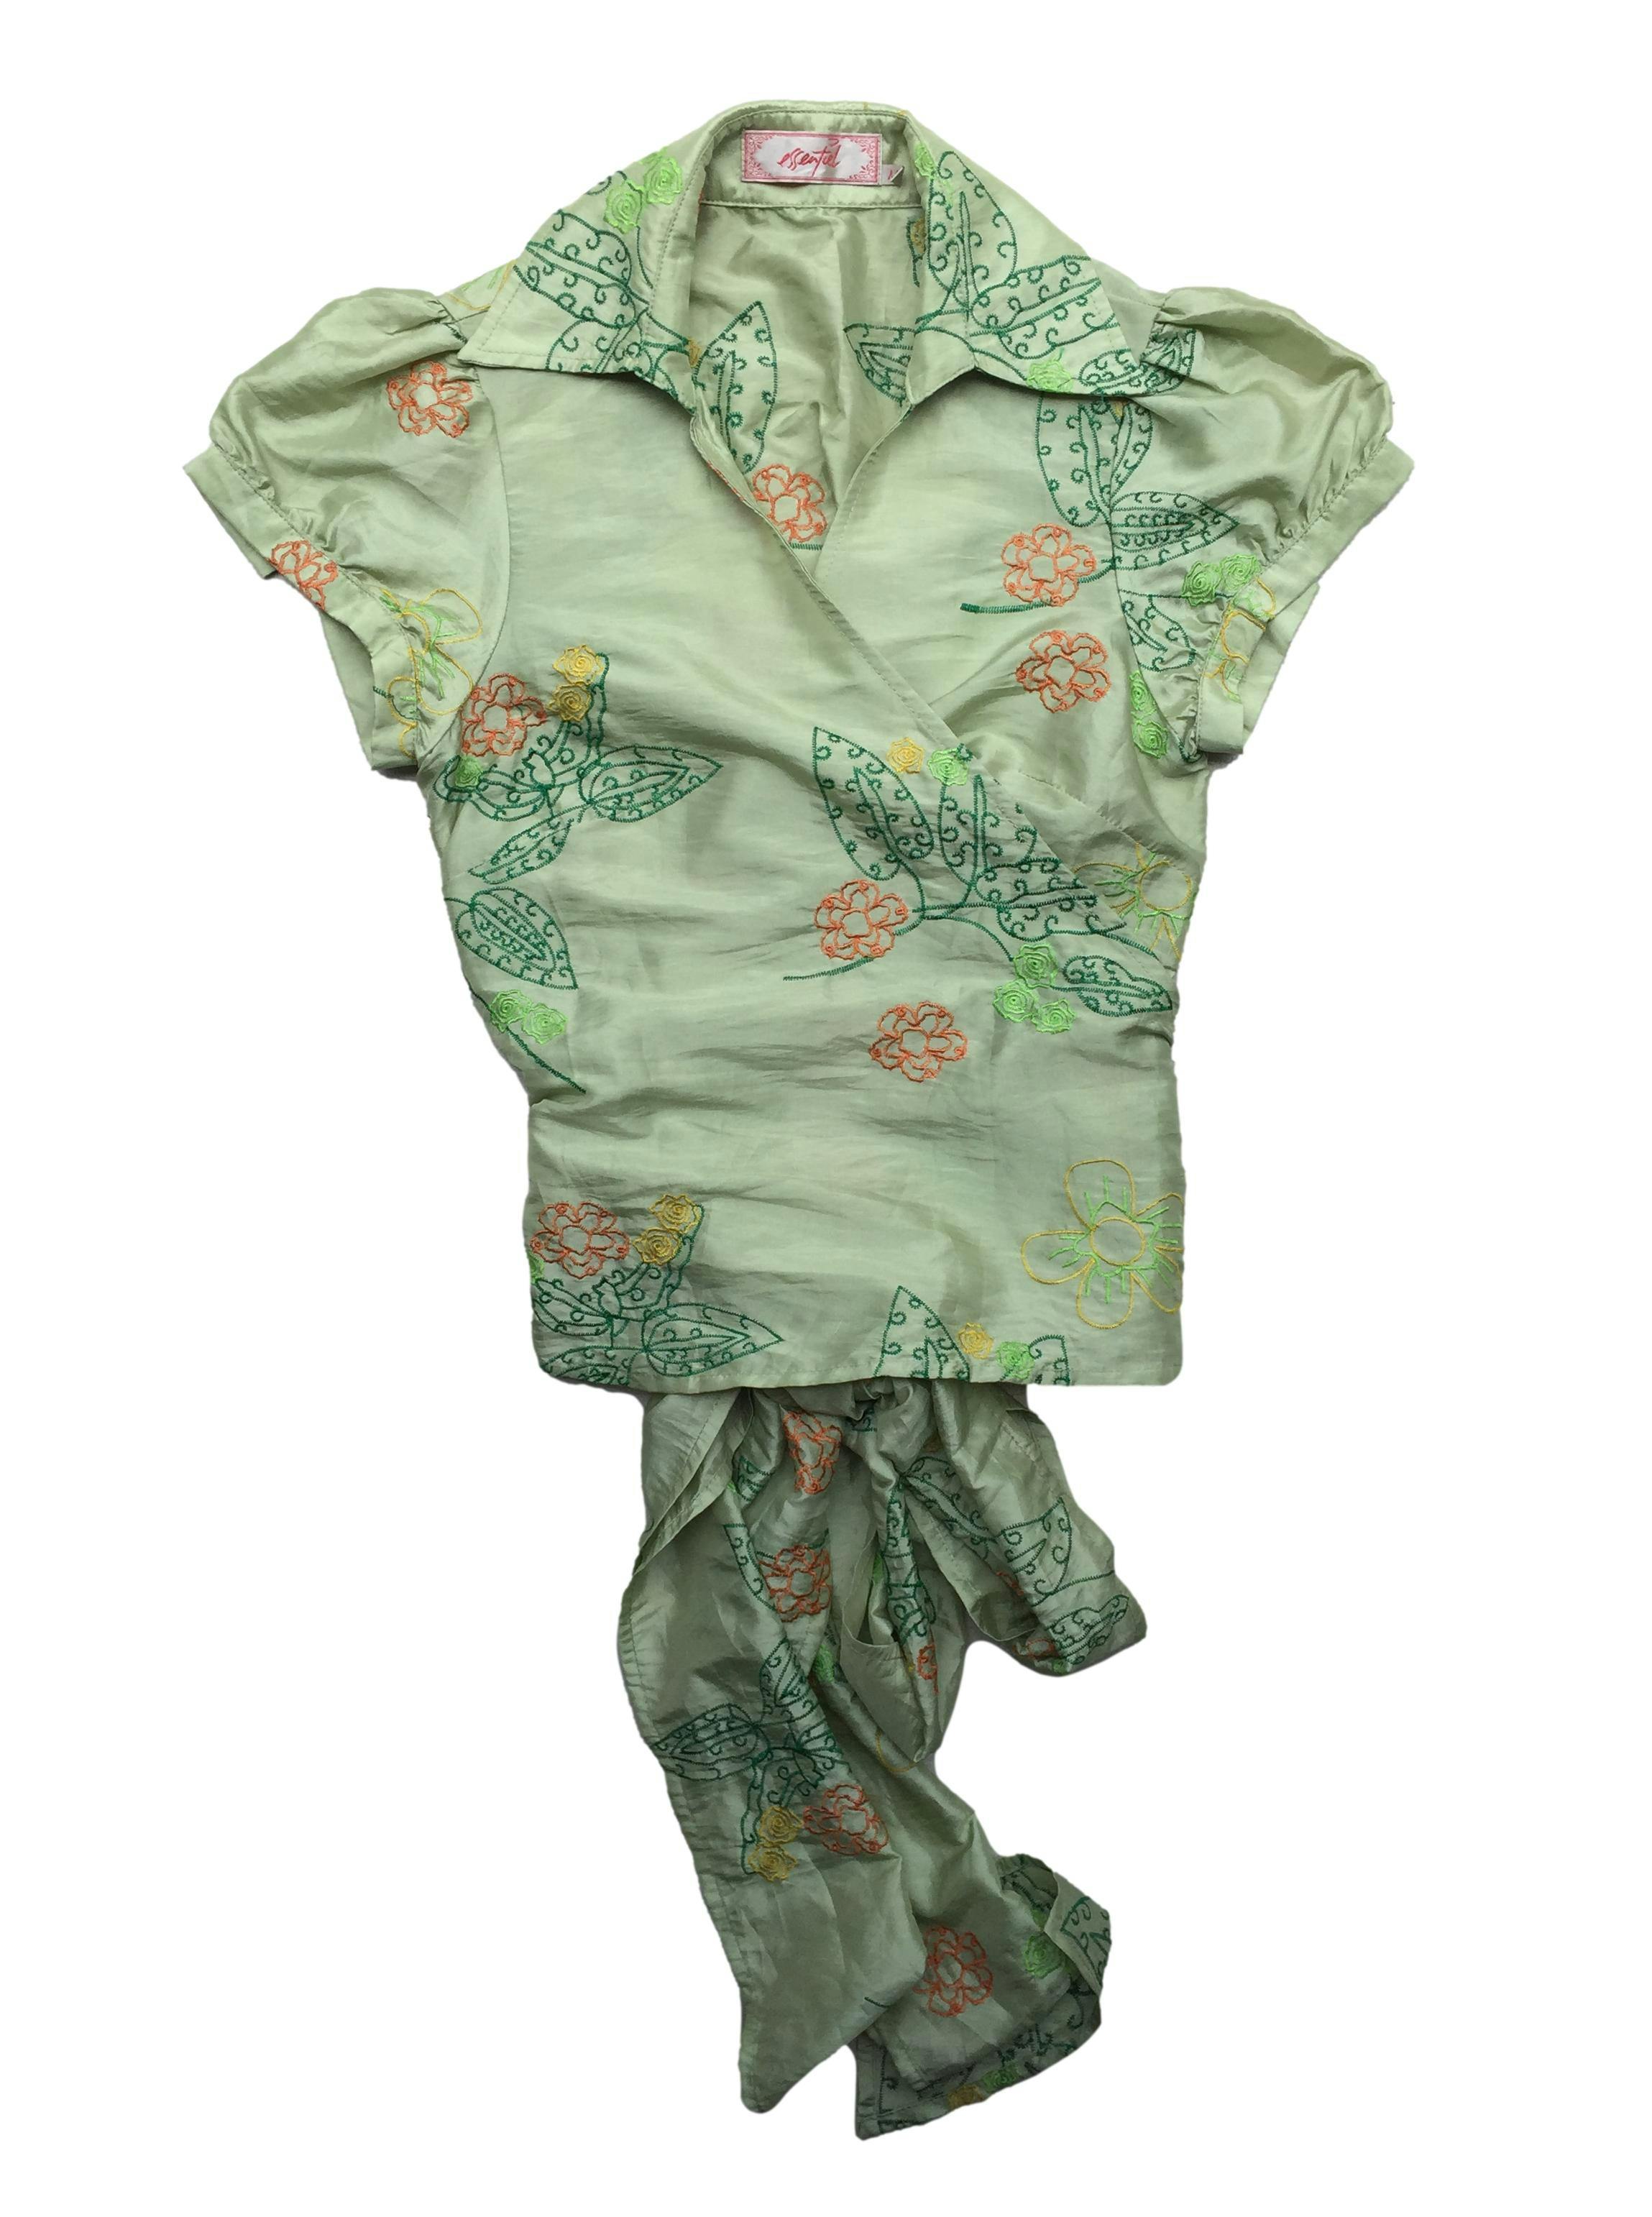 Blusa Essentiel envolvente, tela delgada color verde con bordados florales y mangas abullonadas. Busto 96cm, Largo 52cm.